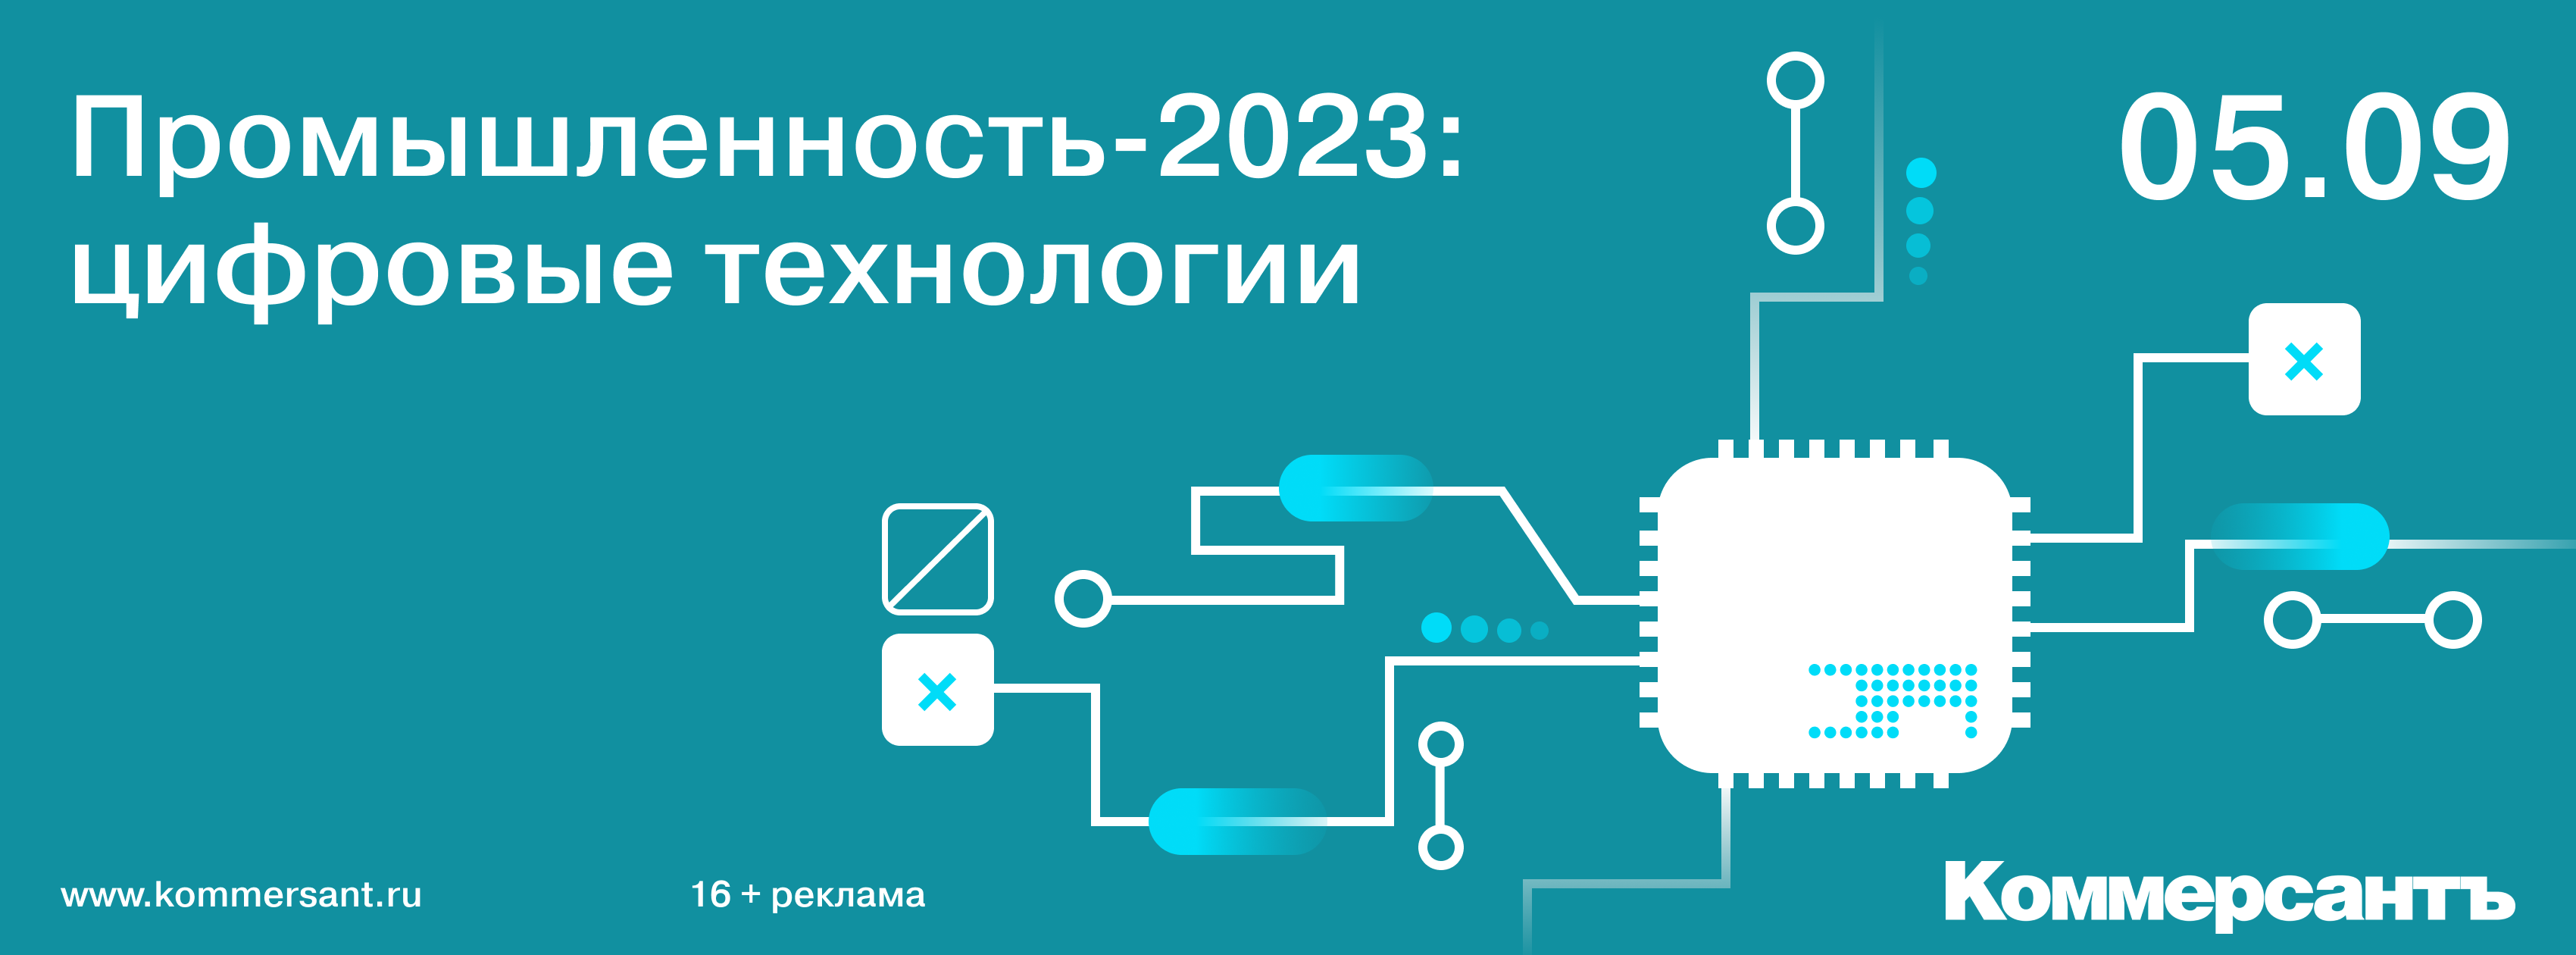 Промышленность-2023: цифровые технологии